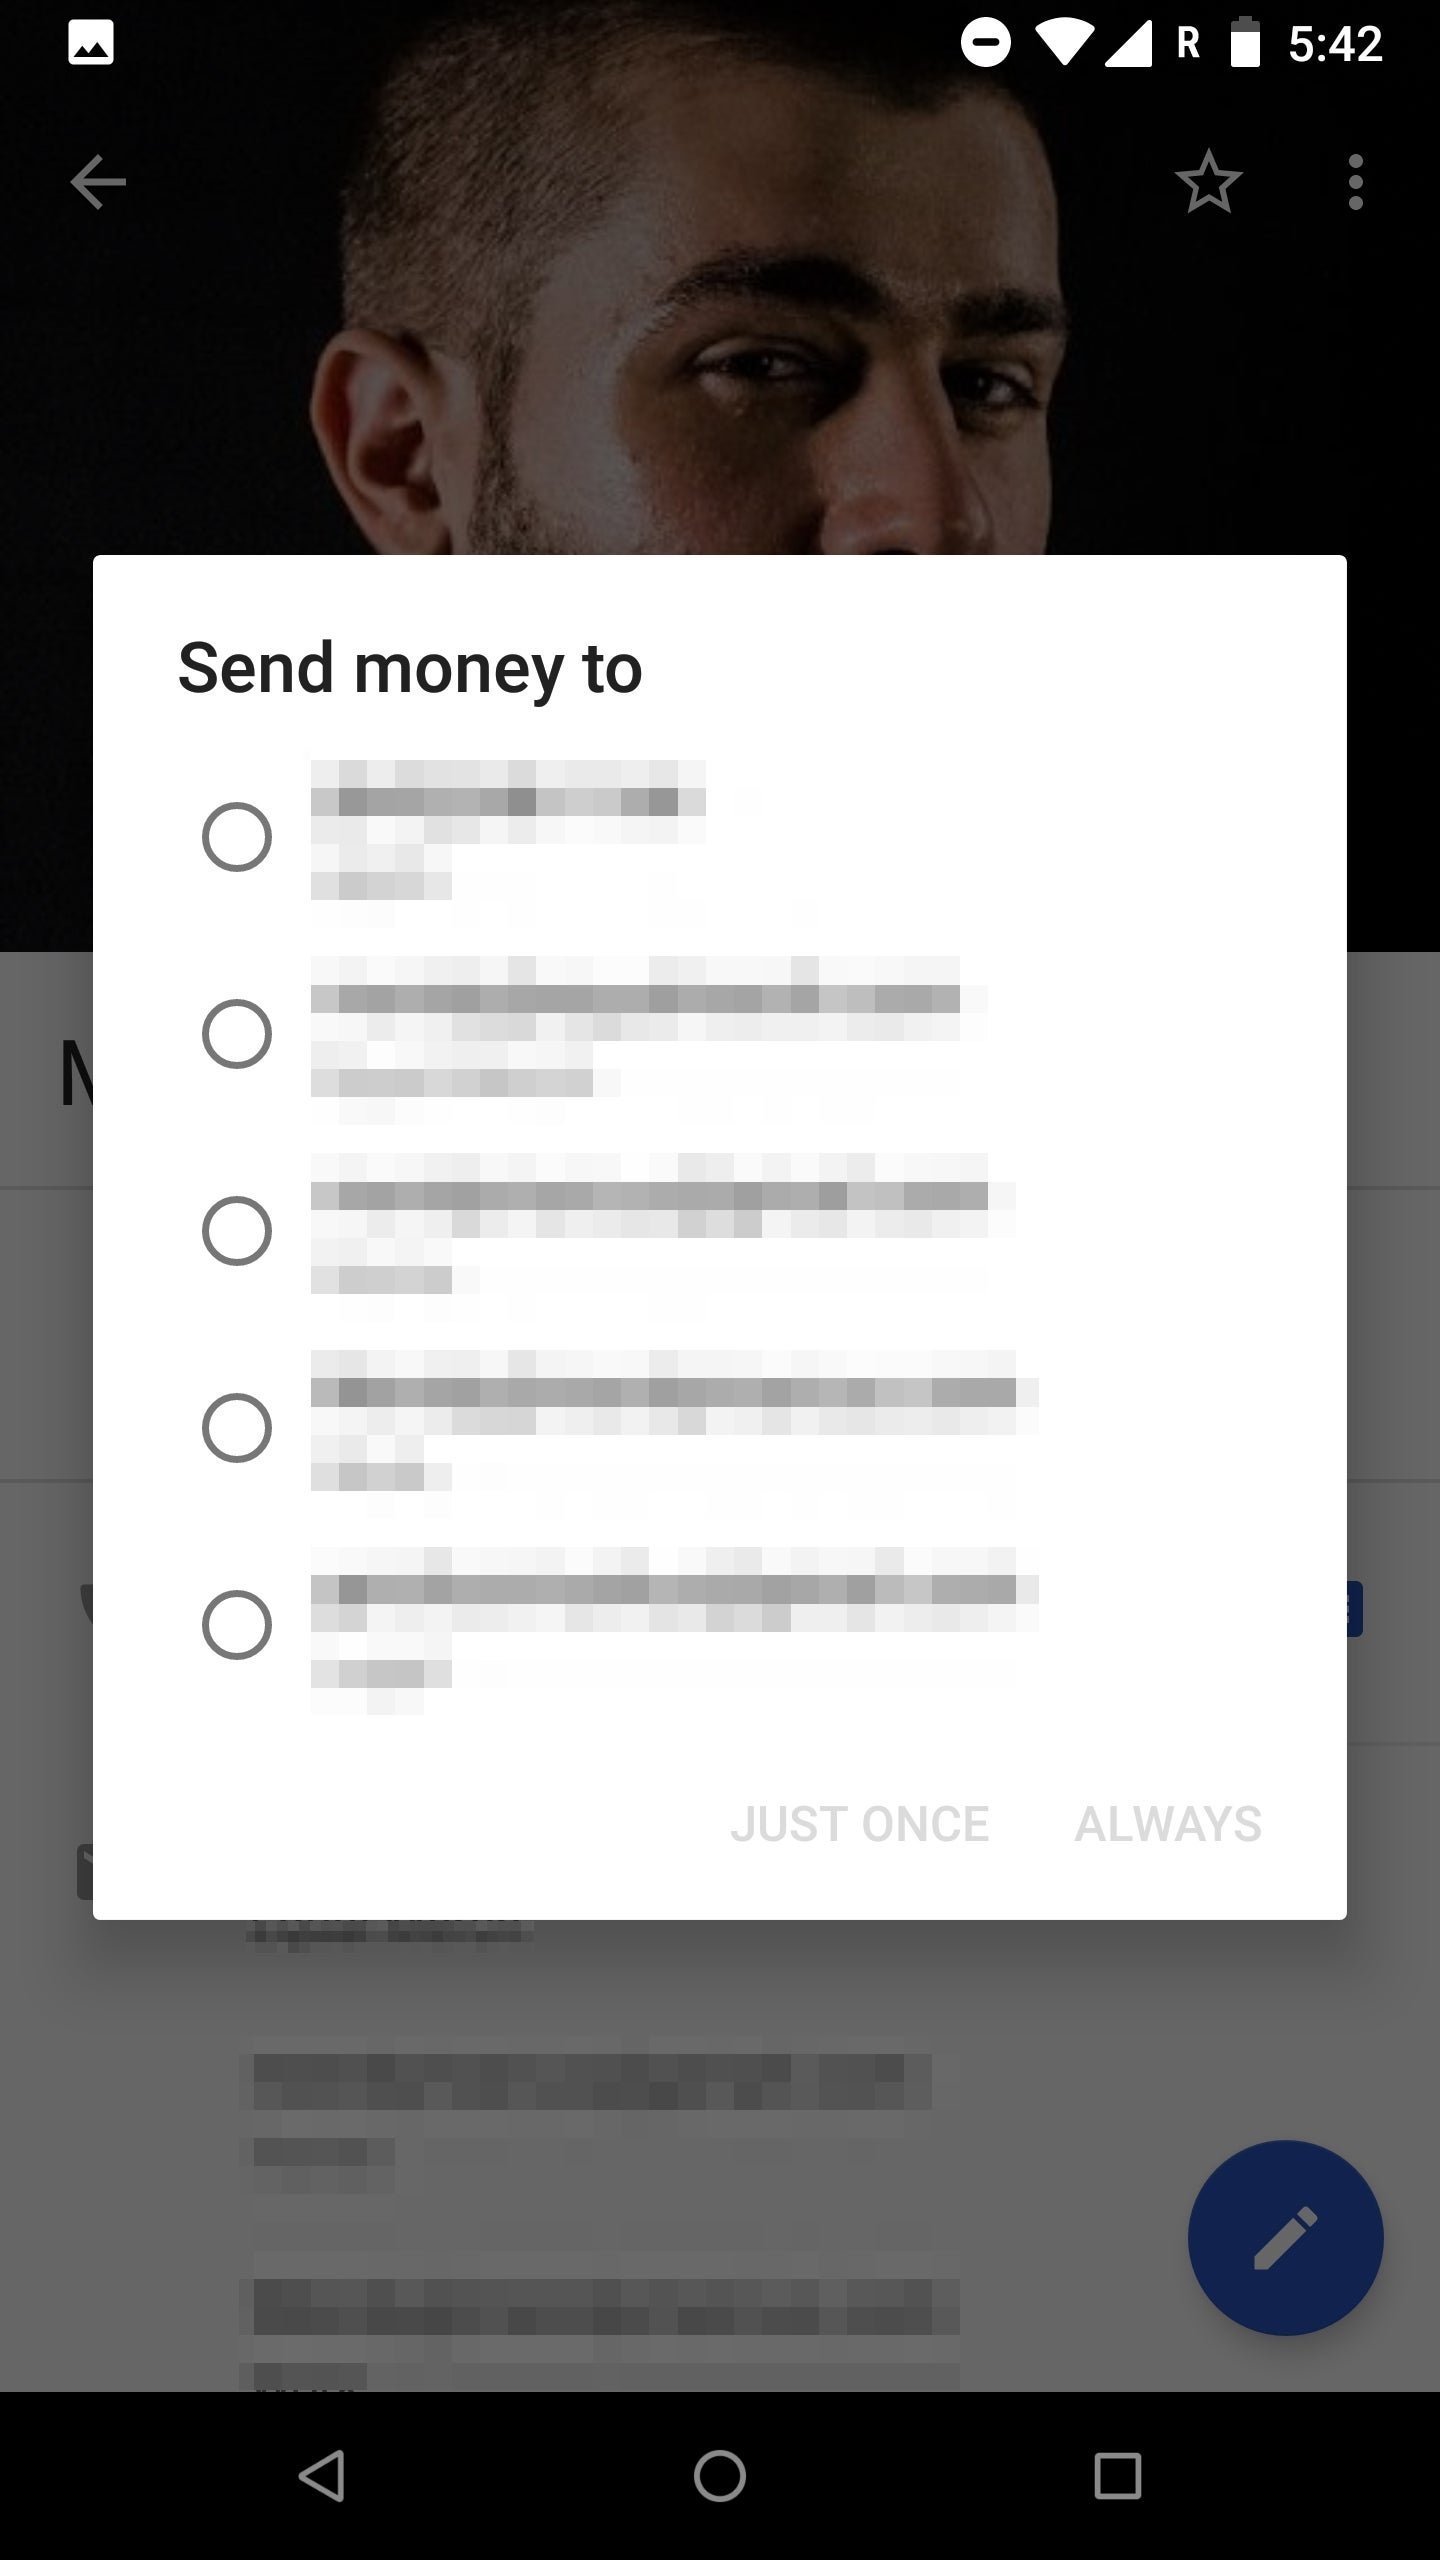 La app de contactos se integrará con Google Pay para que puedas enviar dinero fácilmente